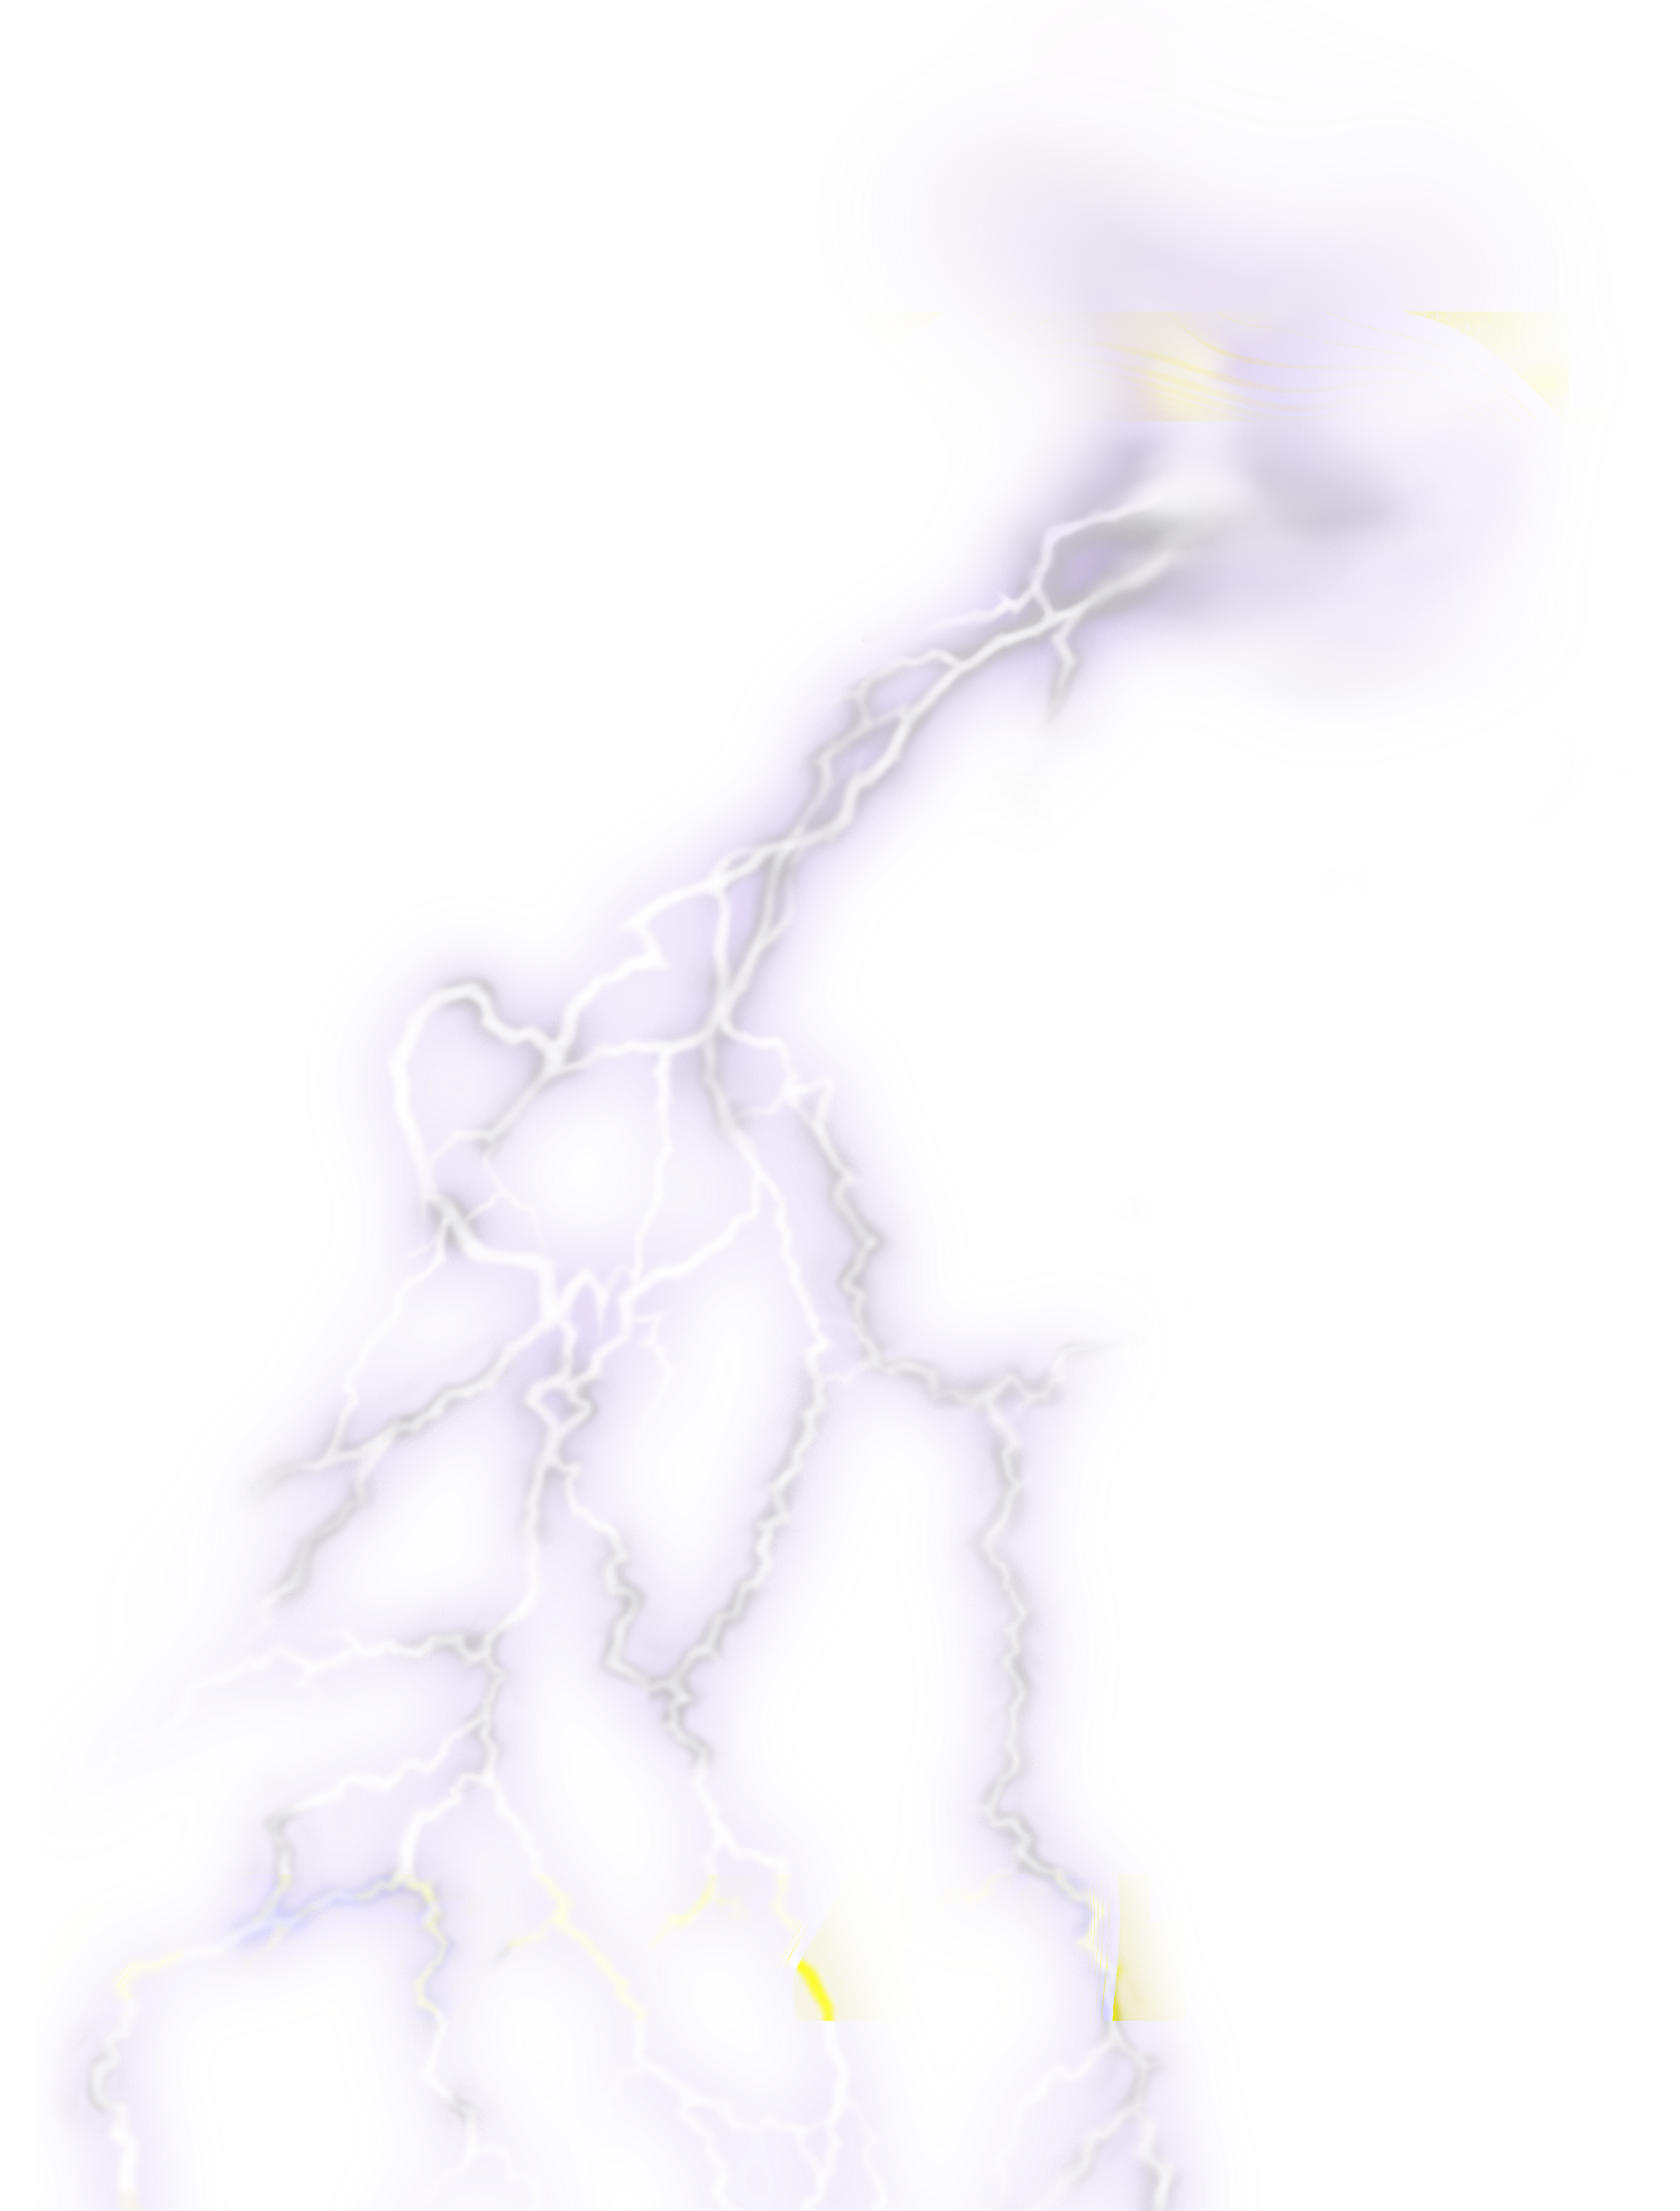 Realistisches Thunder PNG-Bild